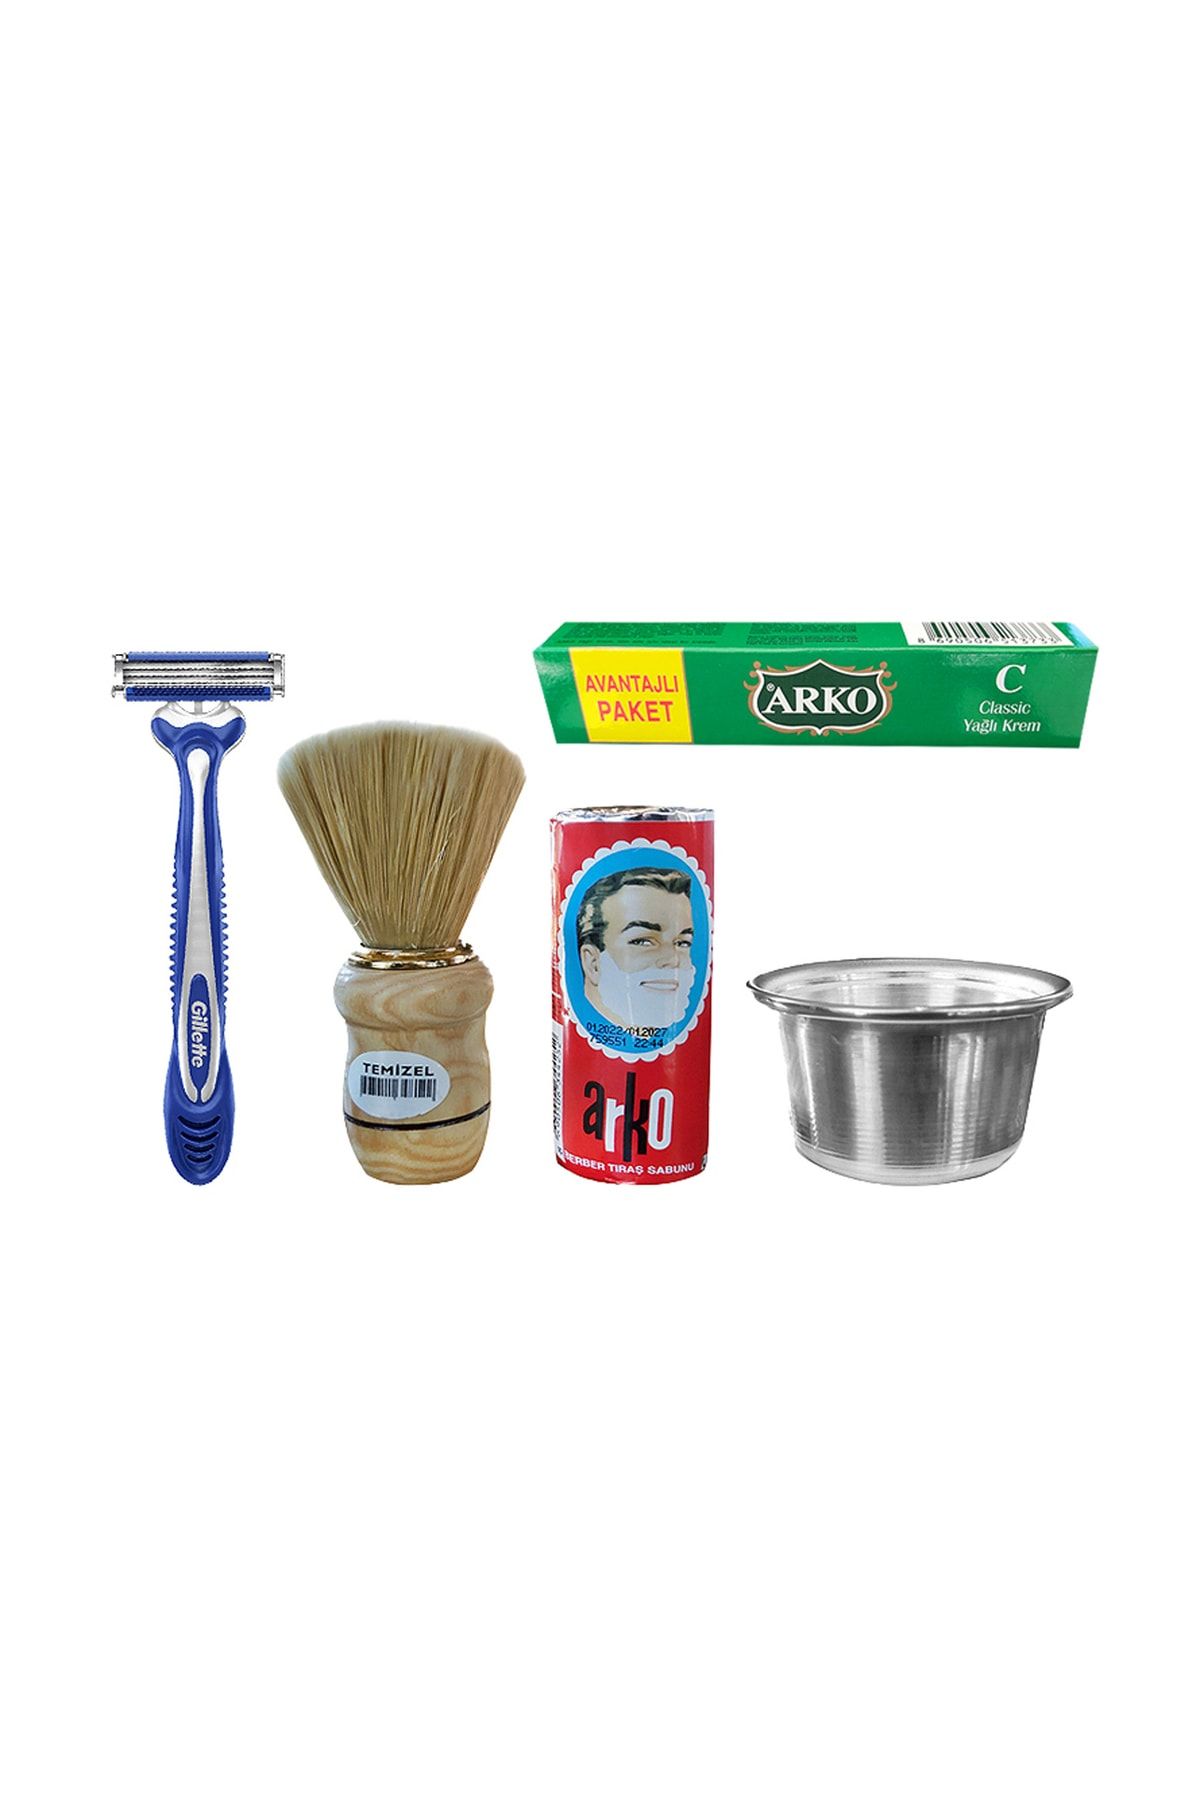 Arko Tıraş Seti - Metal Tıraş Kasesi, Tıraş Sabunu, 30 Cc Krem, Gilette Blue 3, Tıraş Fırçası